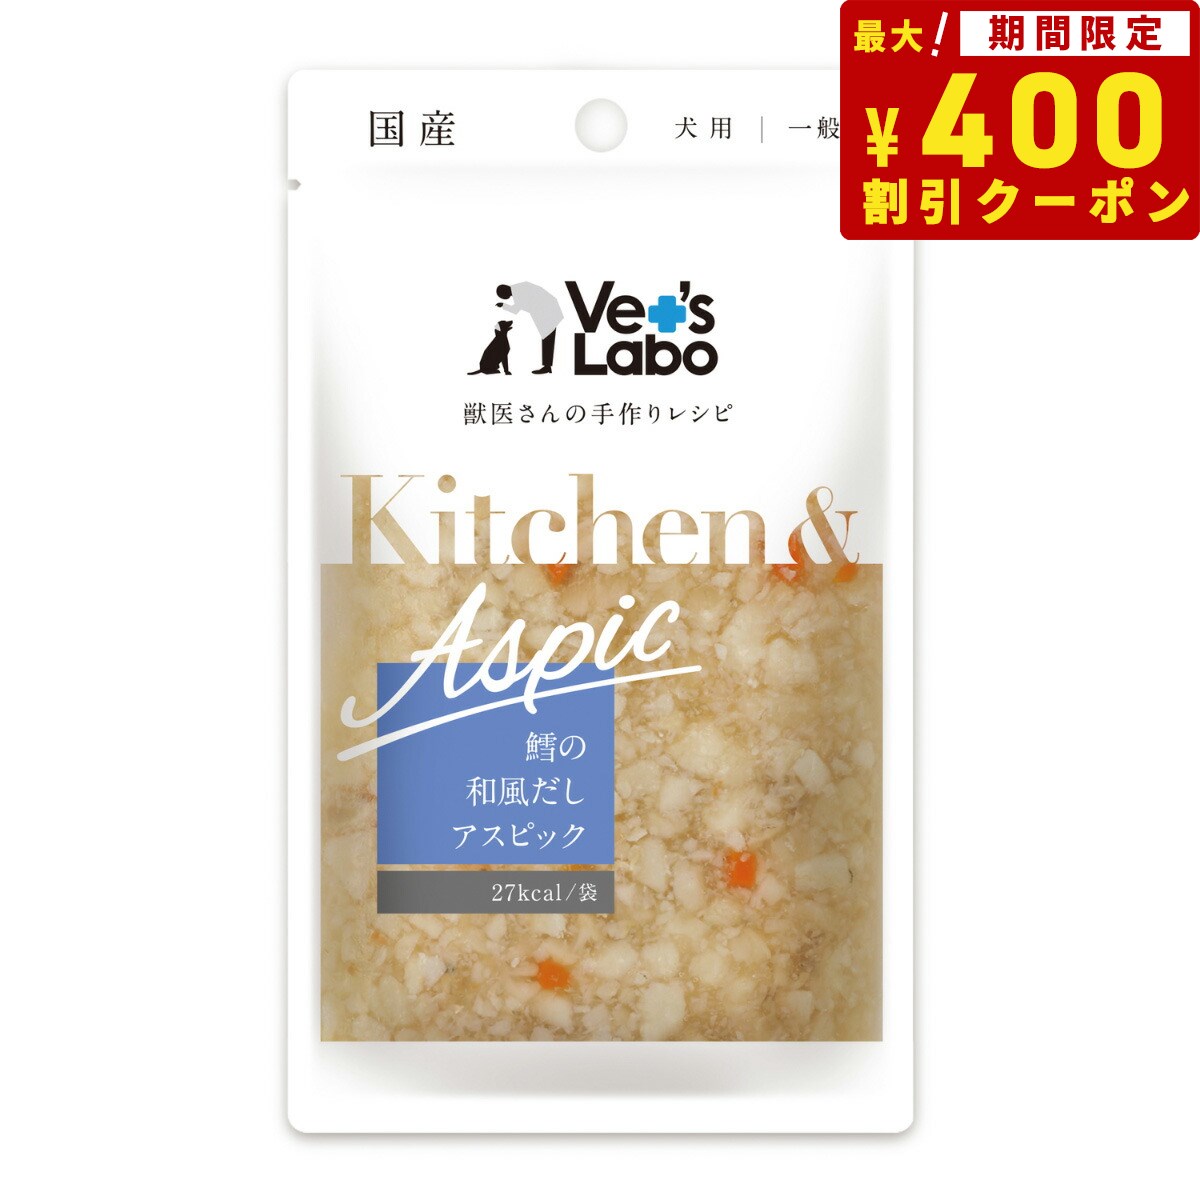 ベッツラボ Vet's Labo キッチン＆アスピック Kitchen＆Aspic 犬用 鱈の和風だしアスピック 80g 国産 日本製 無添加 トッピング 手作り補助